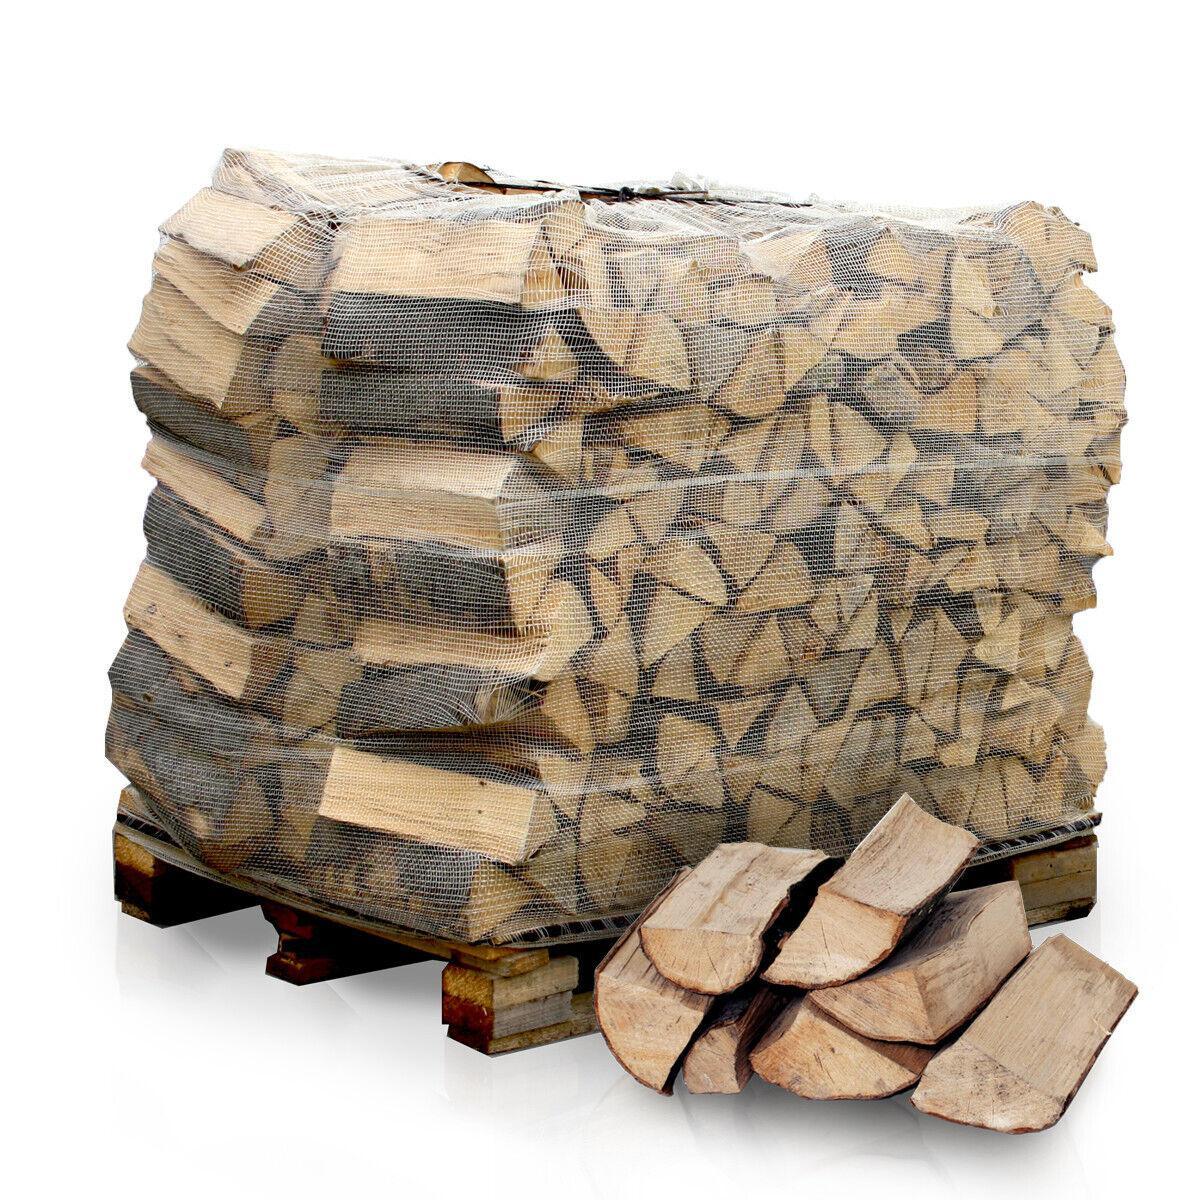 Paligo Heizfuxx Brennholz Buche 33cm 1RM Palette - Brennholz-Scheiffele.de - Ihre Anlaufstelle für hochwertiges Brennholz!